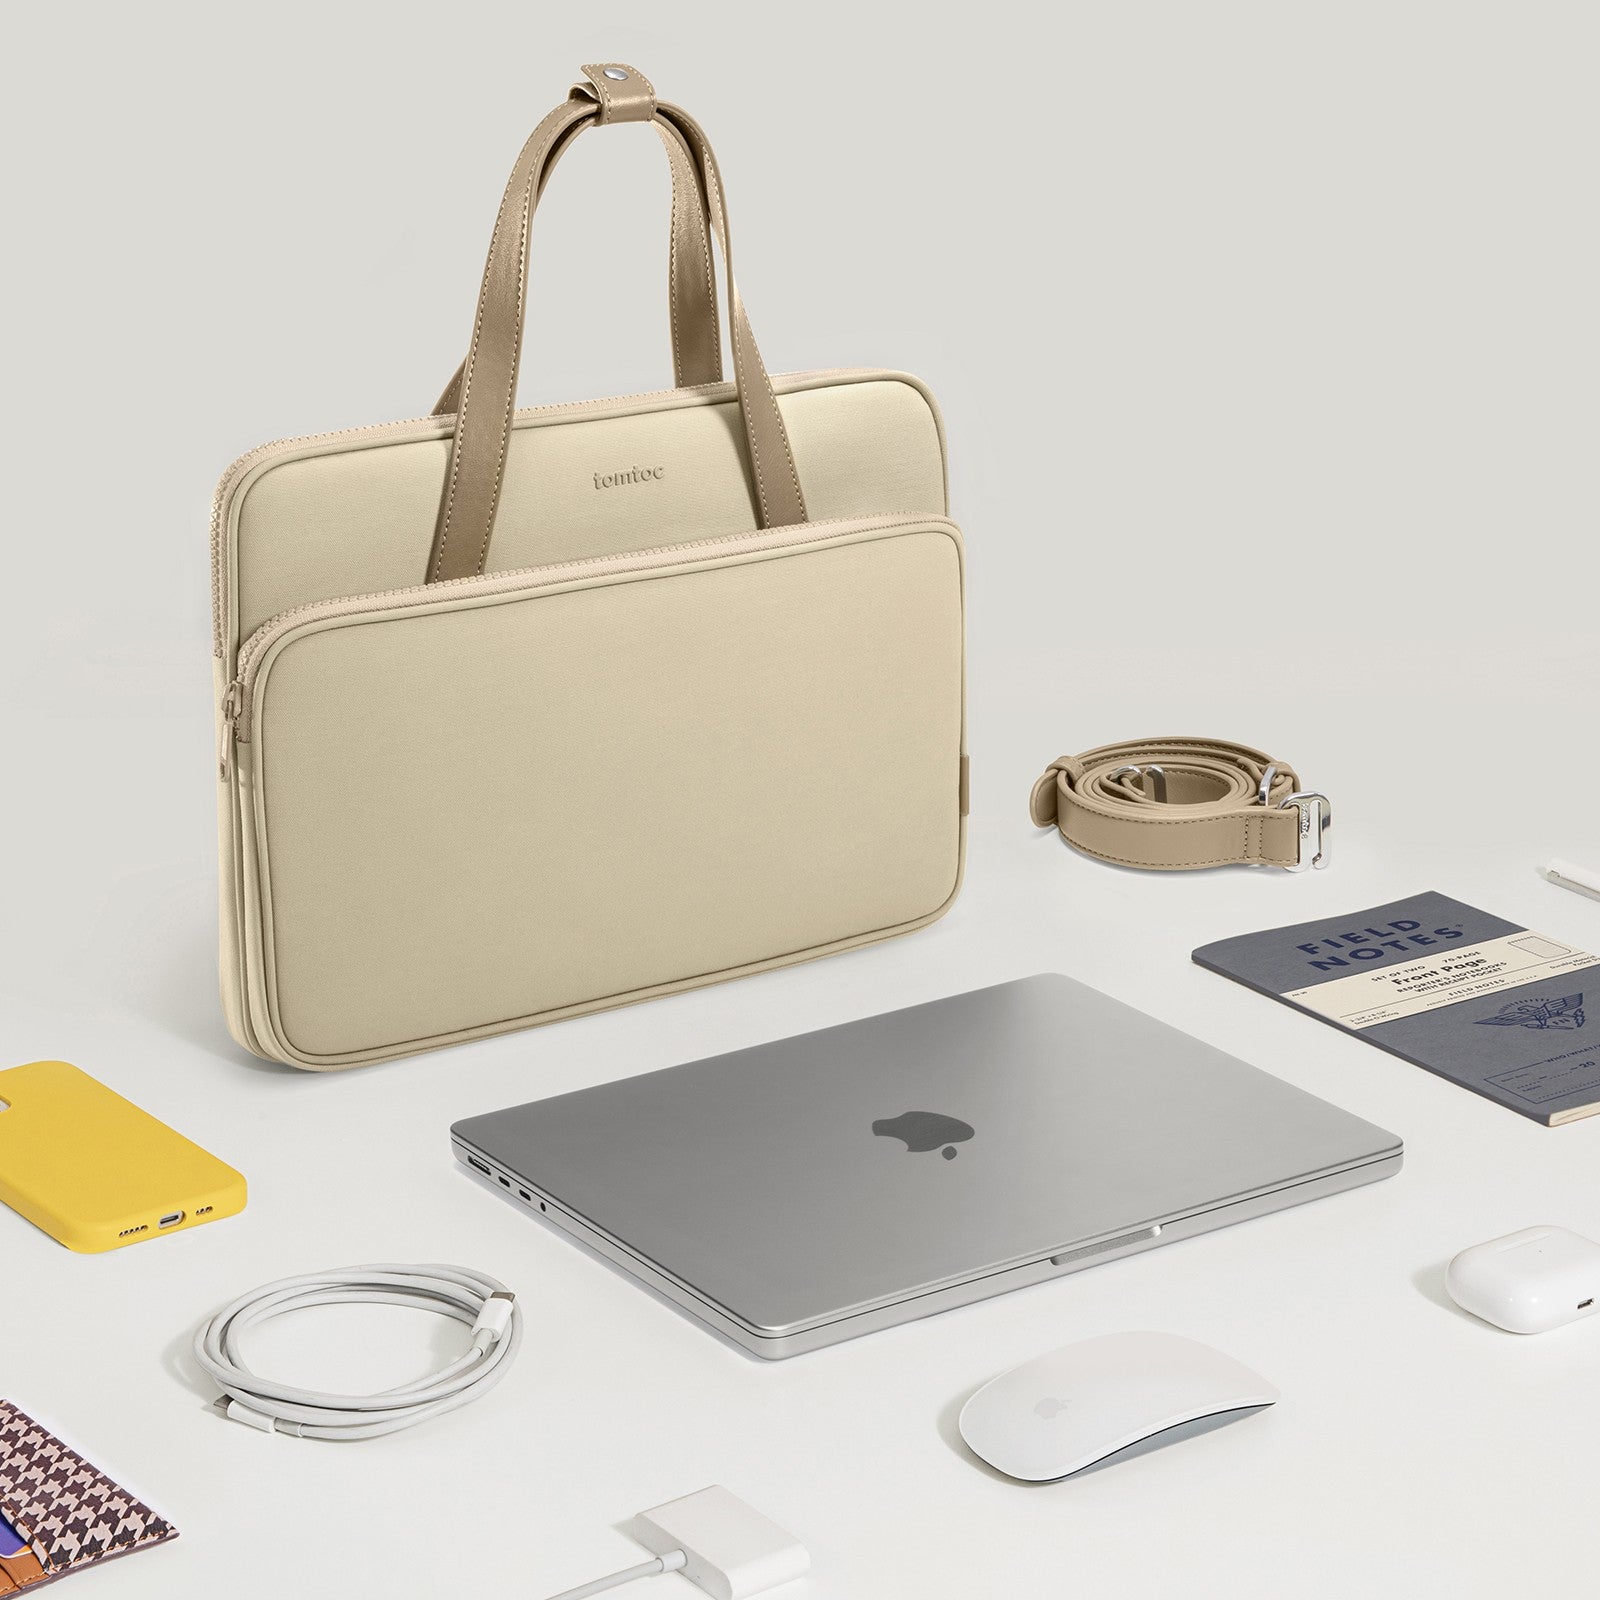 Versatile-A12 Laptop Shoulder Bag for 14 inch MacBook Pro